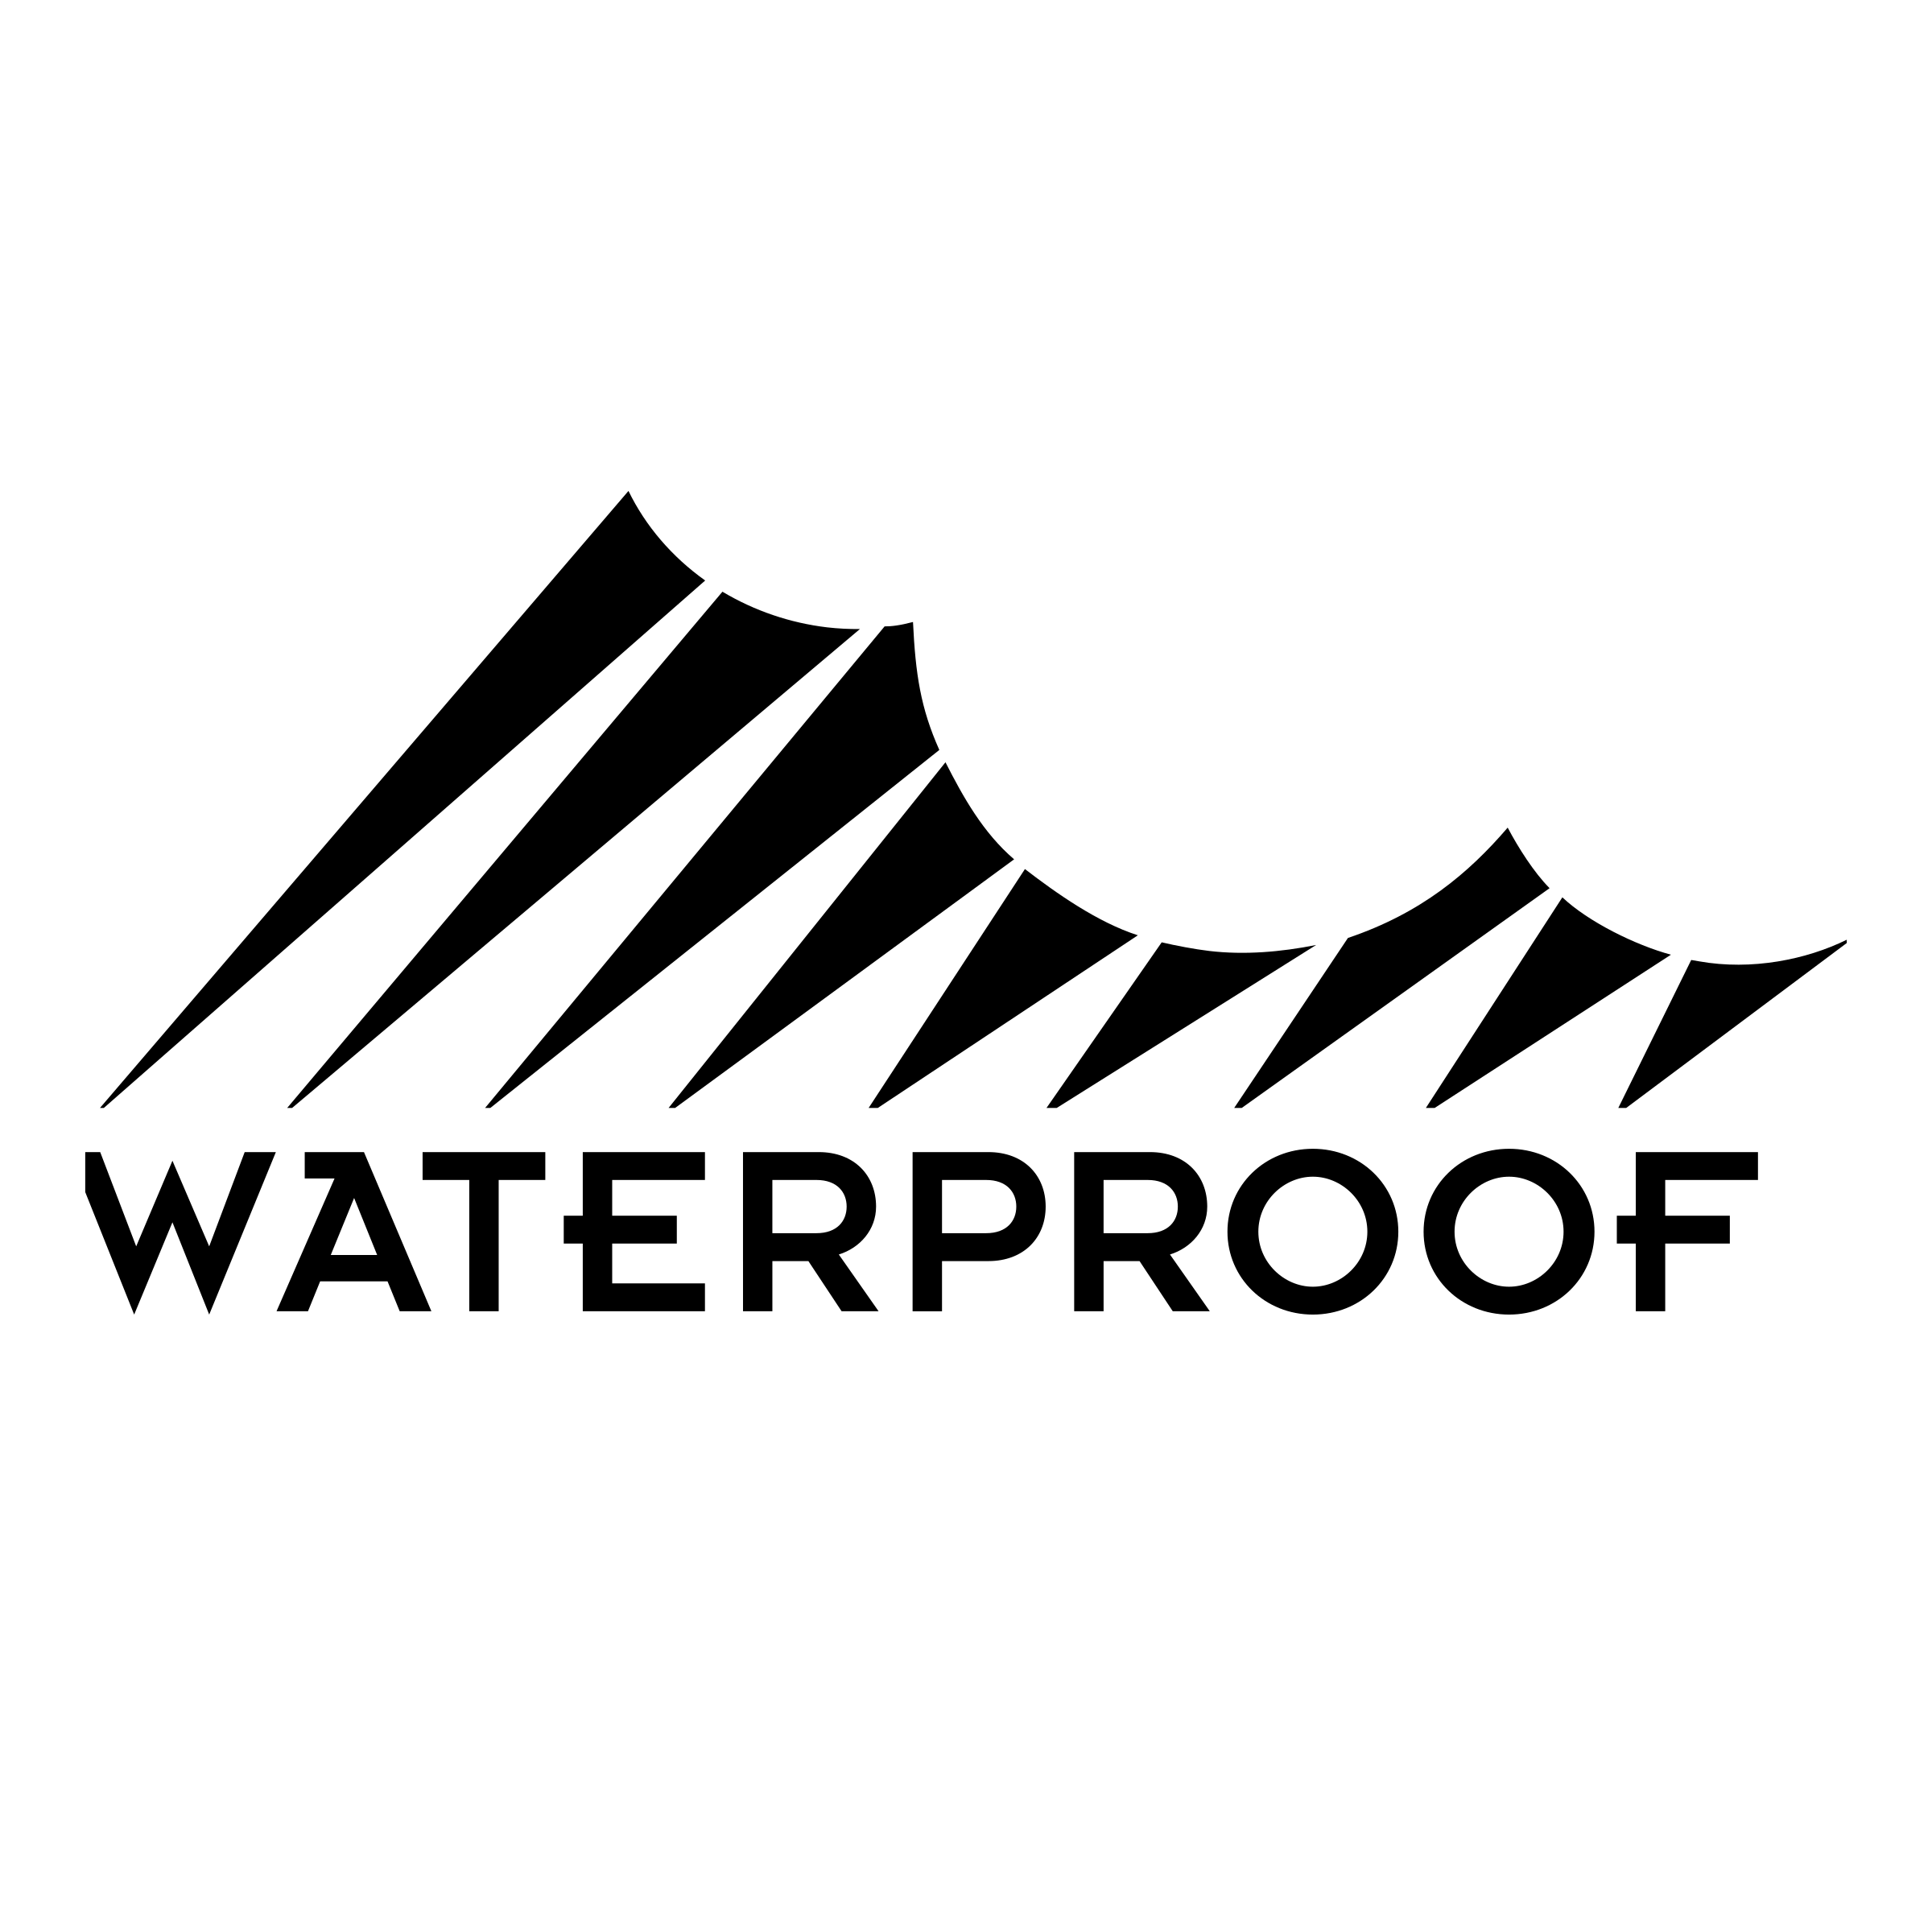 Waterproof Logo - Waterproof Logo PNG Transparent & SVG Vector - Freebie Supply